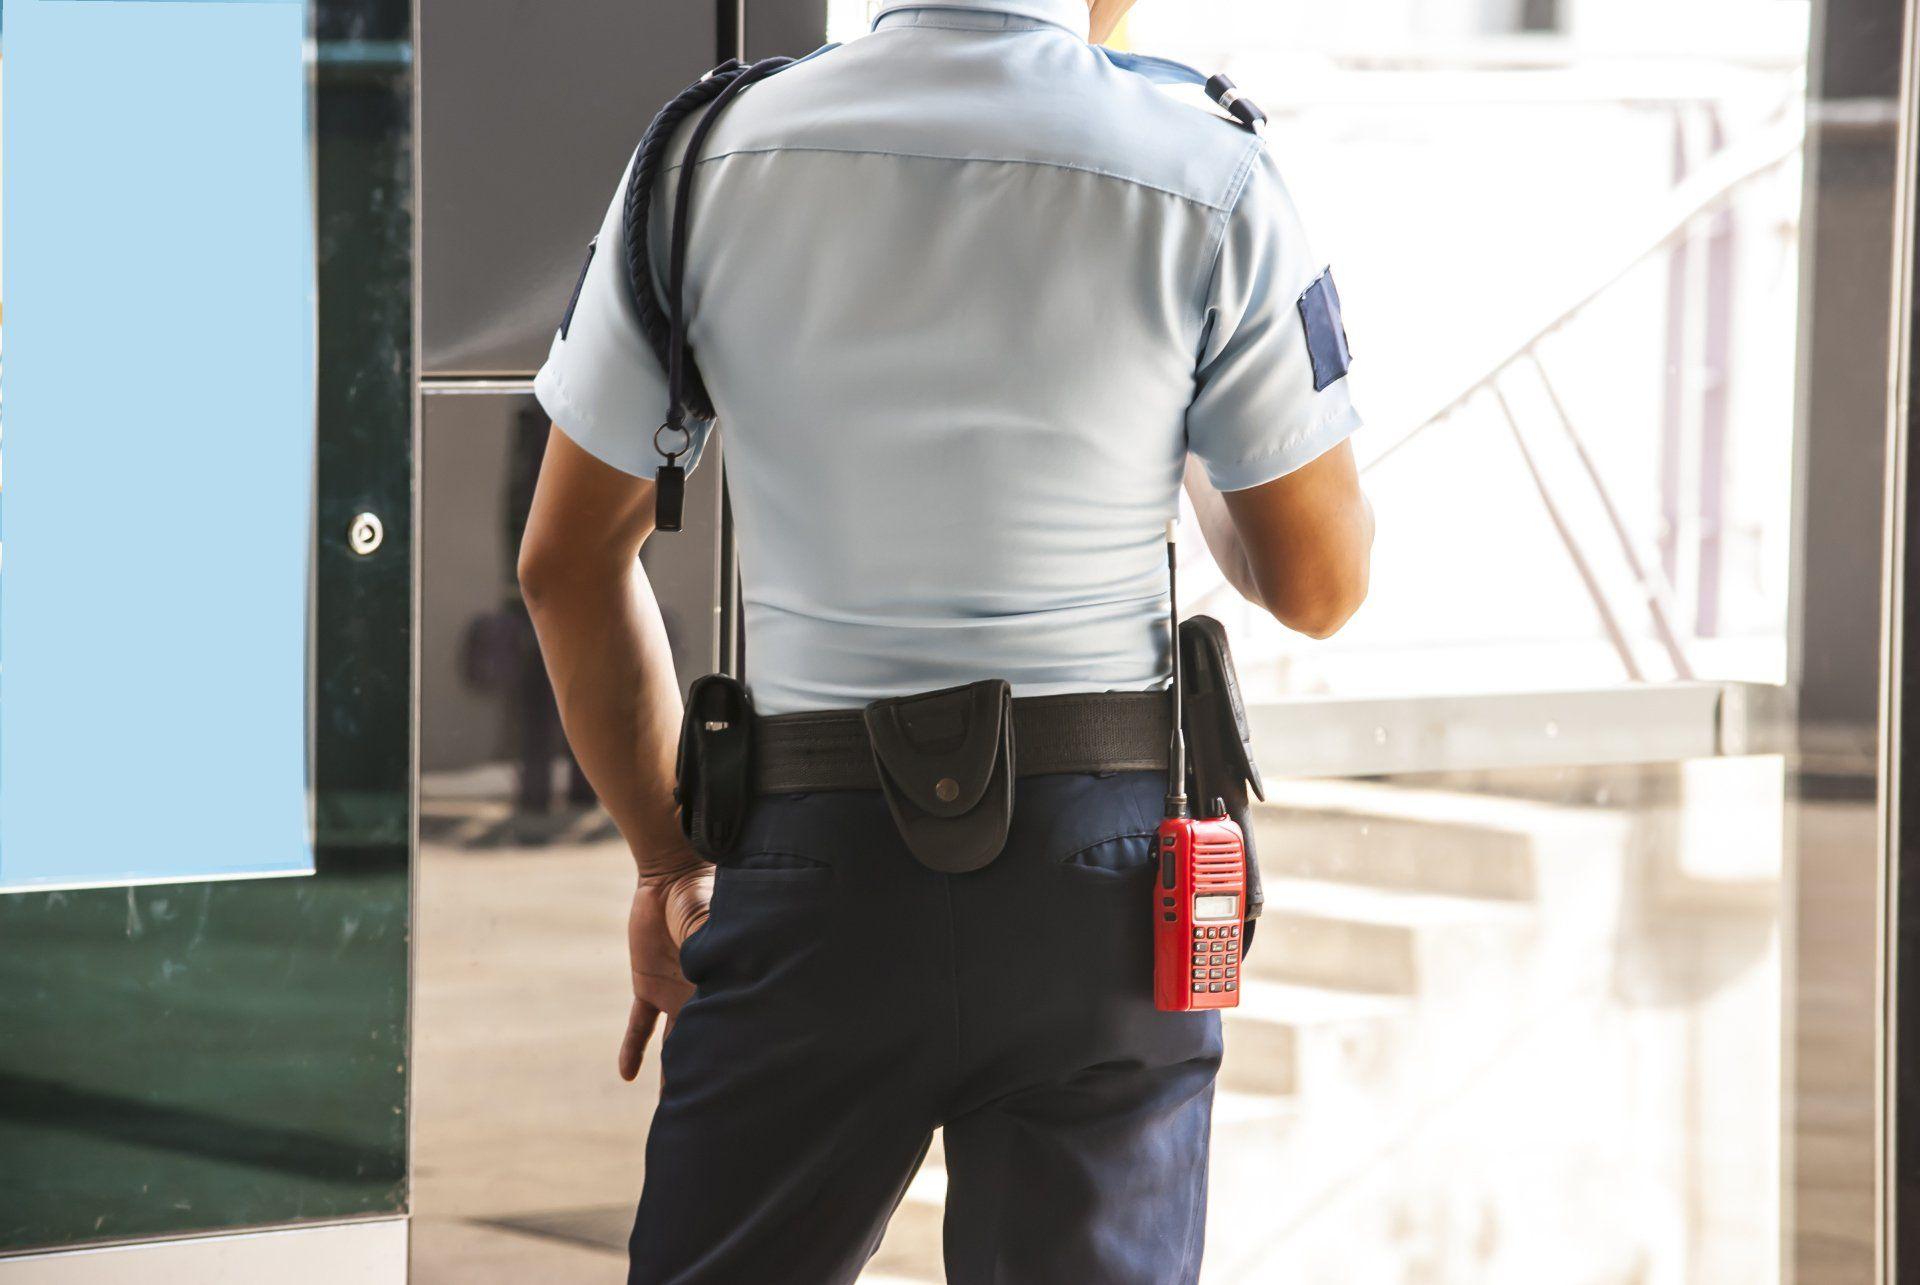 Sécurité - agent de sécurité - brassard - protection - prévention